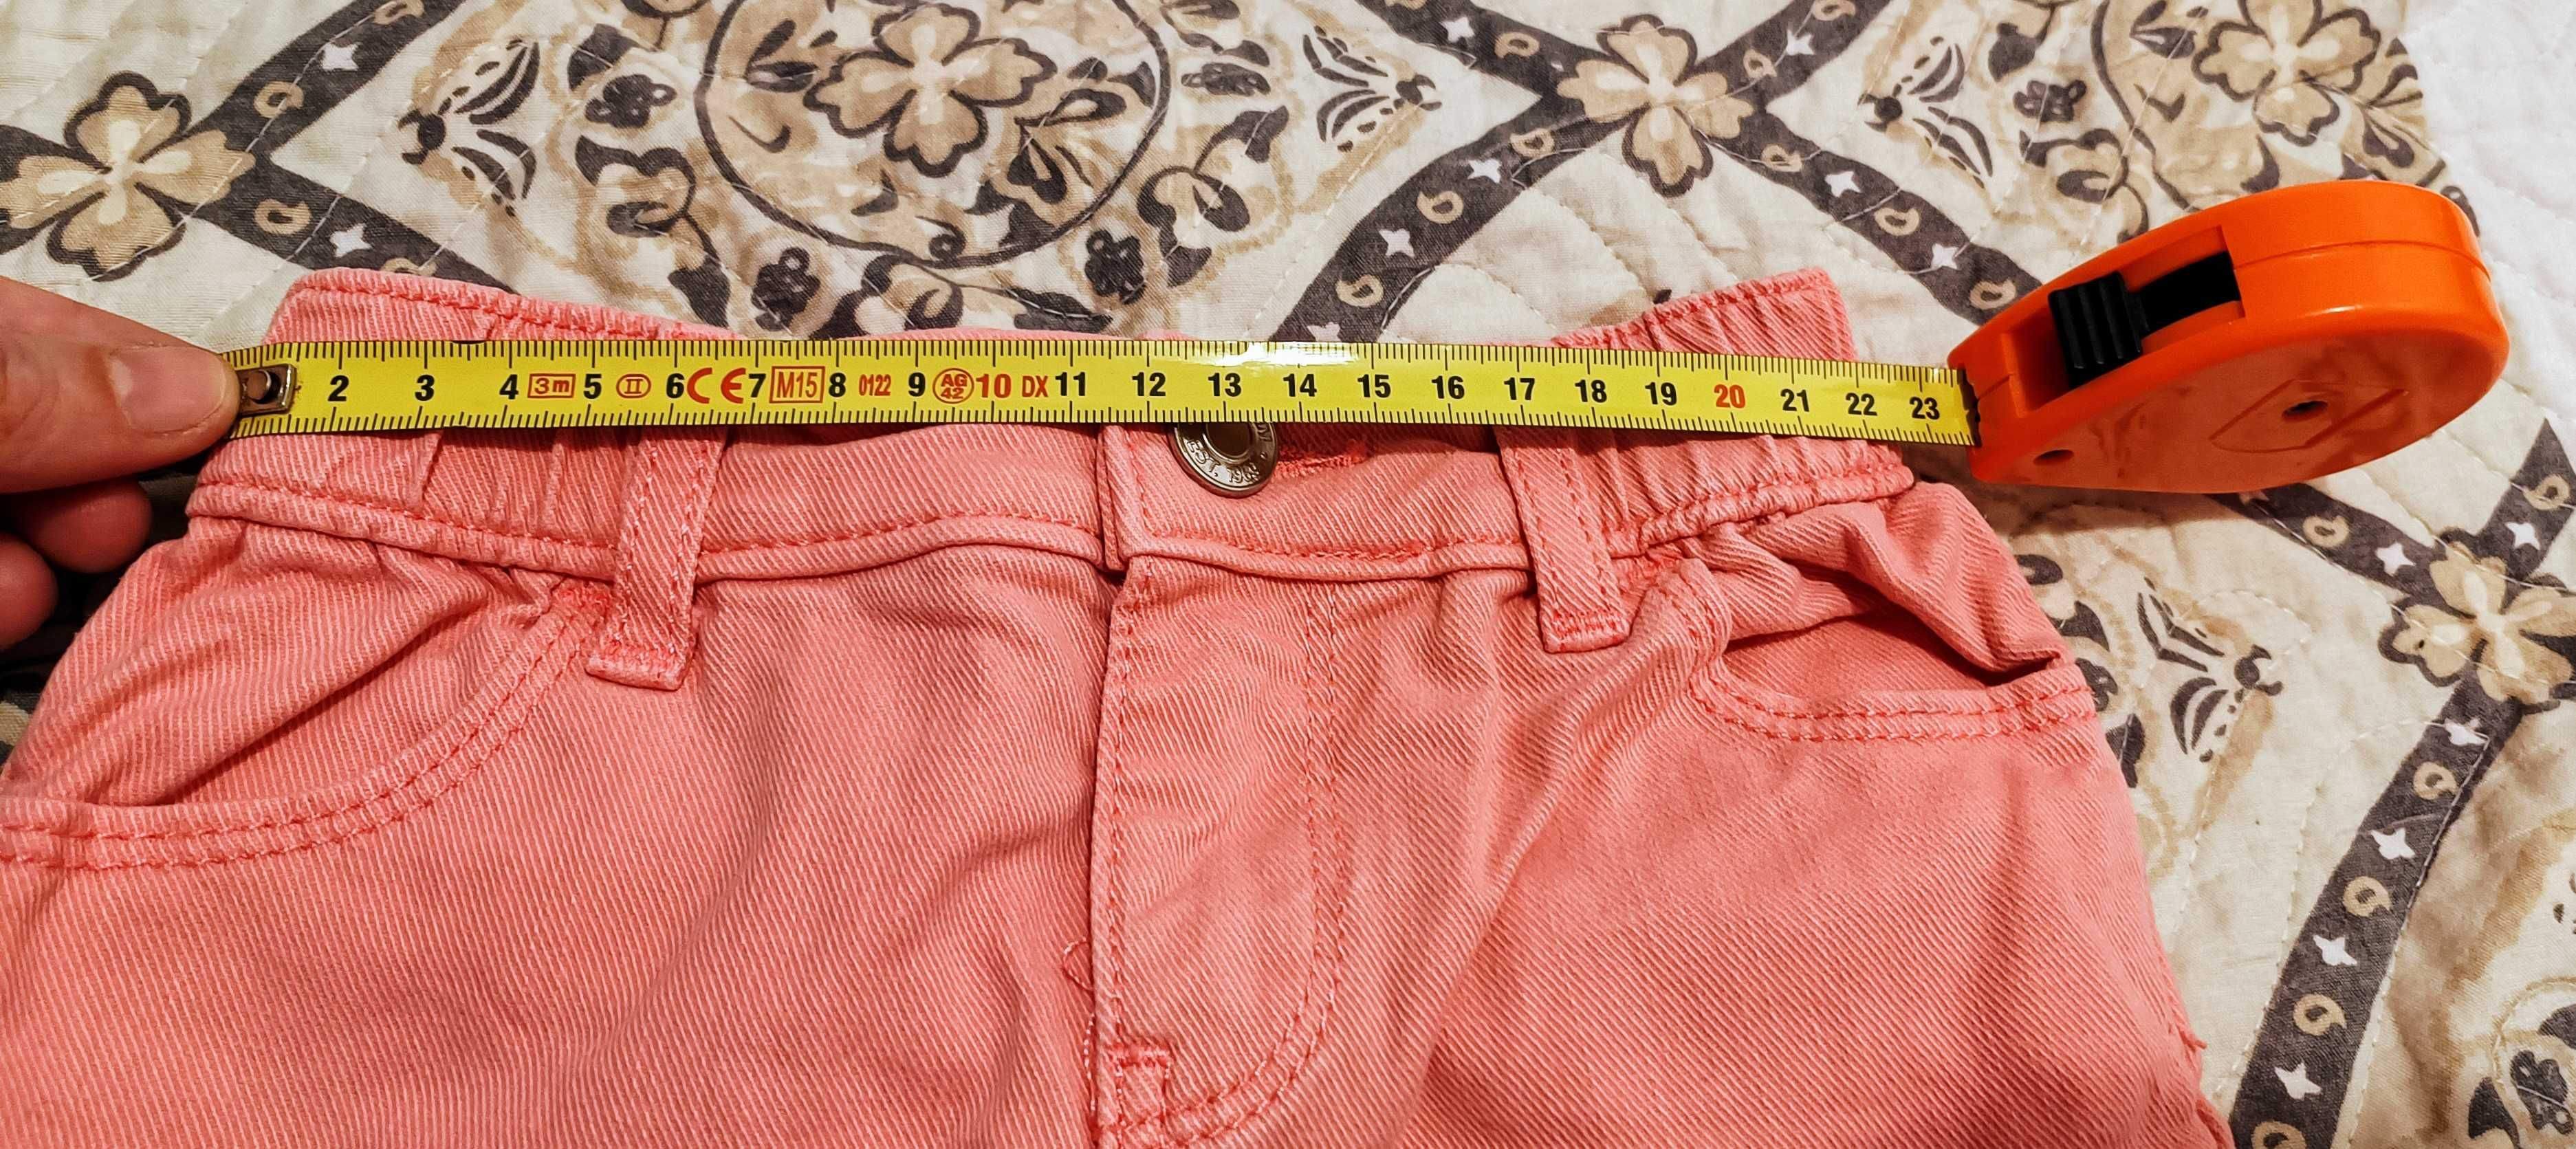 Pantaloni scurți /blugi GAP, pentru fetițe între 1-2 ani